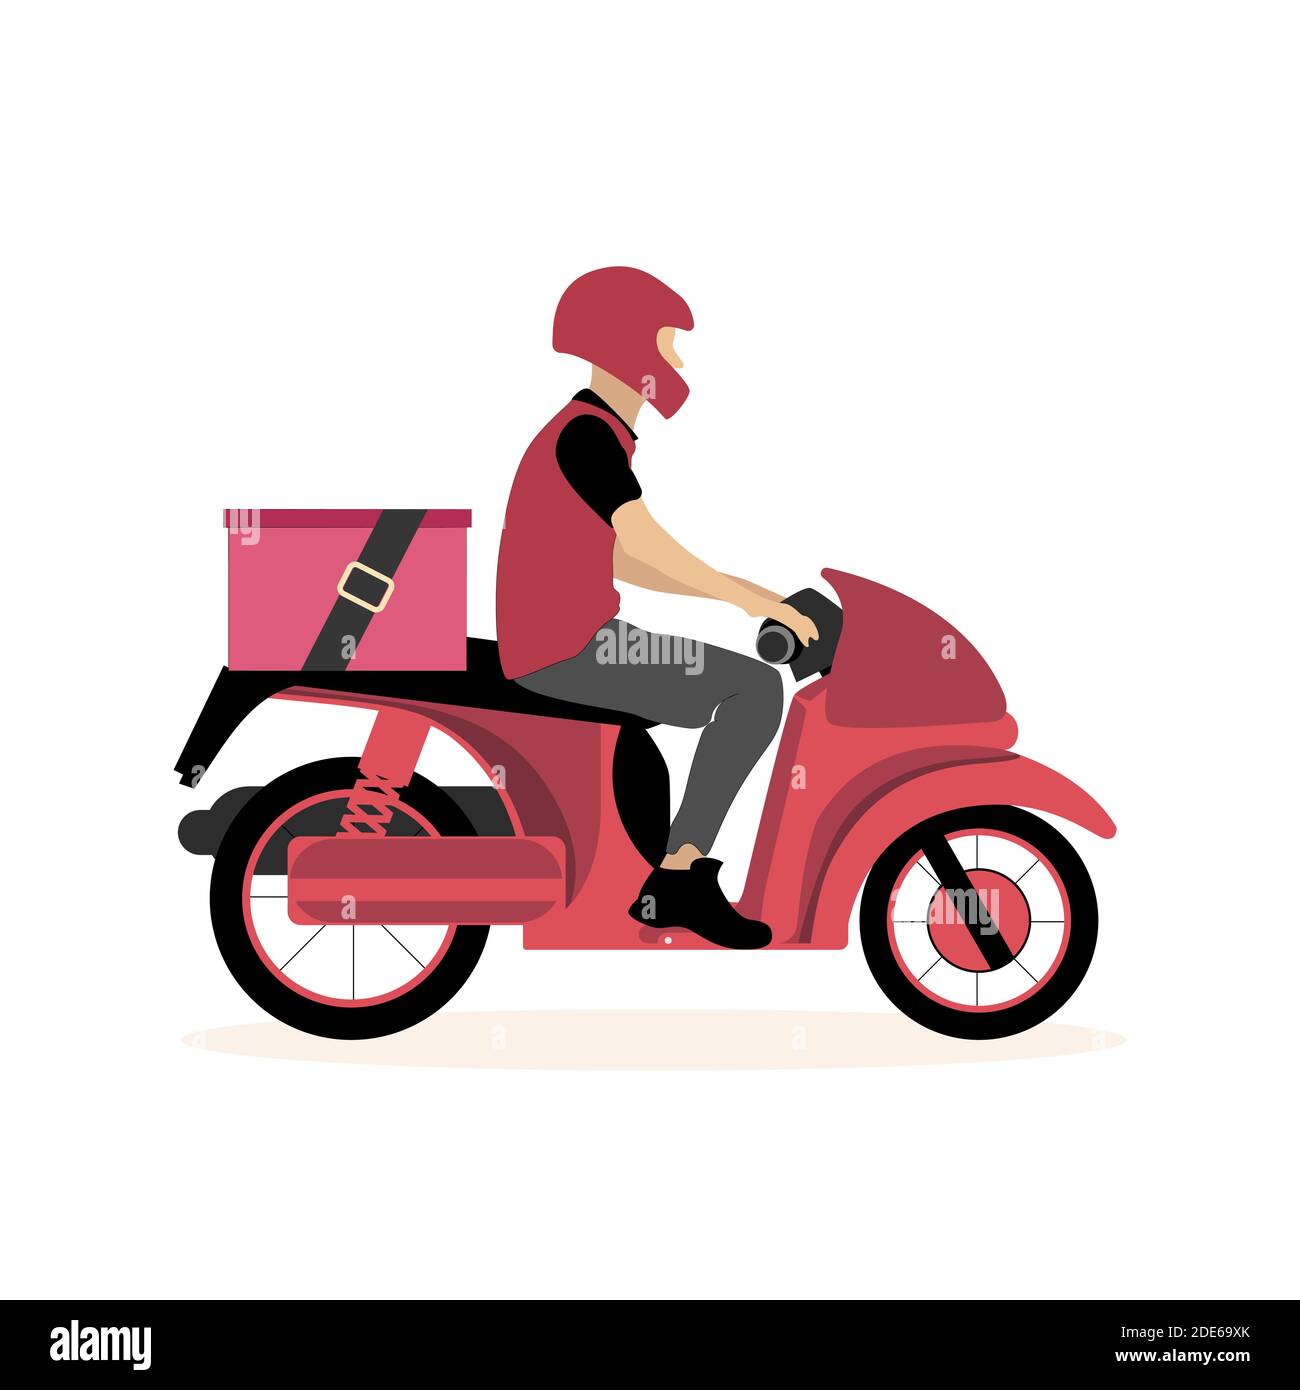 Dessin animé de messagerie de scooter isolé sur fond blanc. Livraison de scooter Vector, service rapide par mobylette, messagerie alimentaire avec boîte pour illustration de pizza Illustration de Vecteur